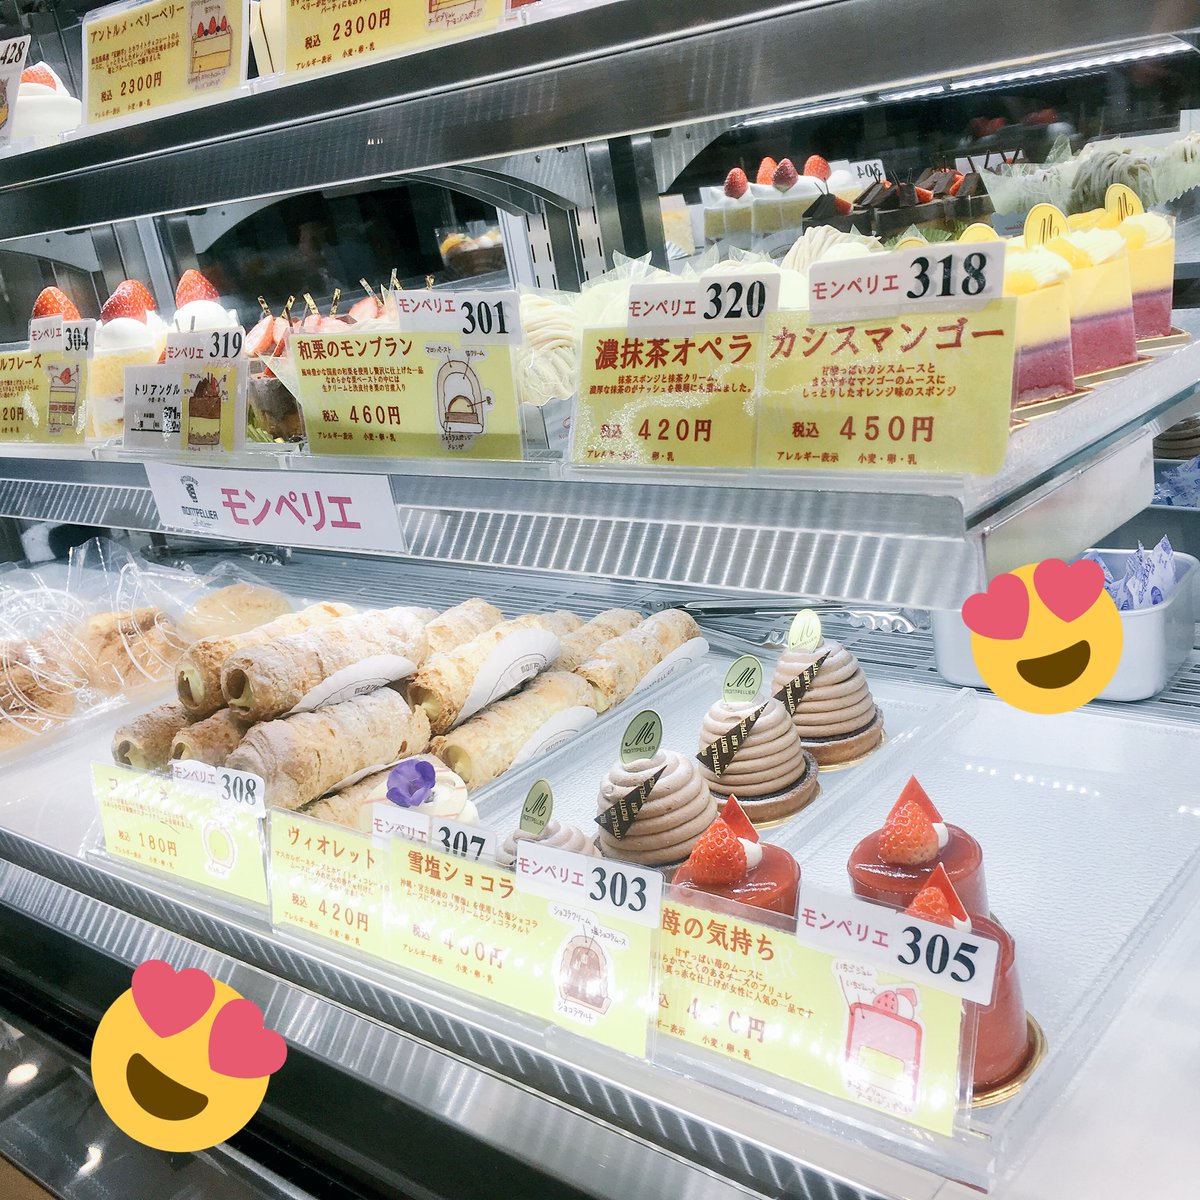 ハッピー製菓調理専門学校 公式 皆さんお休みはいかがお過ごしですか 千葉駅駅 ナカが改装され はや一週間です ハッピースイーツ製菓専門学校の講師の先生方が作り出すケーキはコチラ 改札を入って左の Artisan In Chiba にありますよ